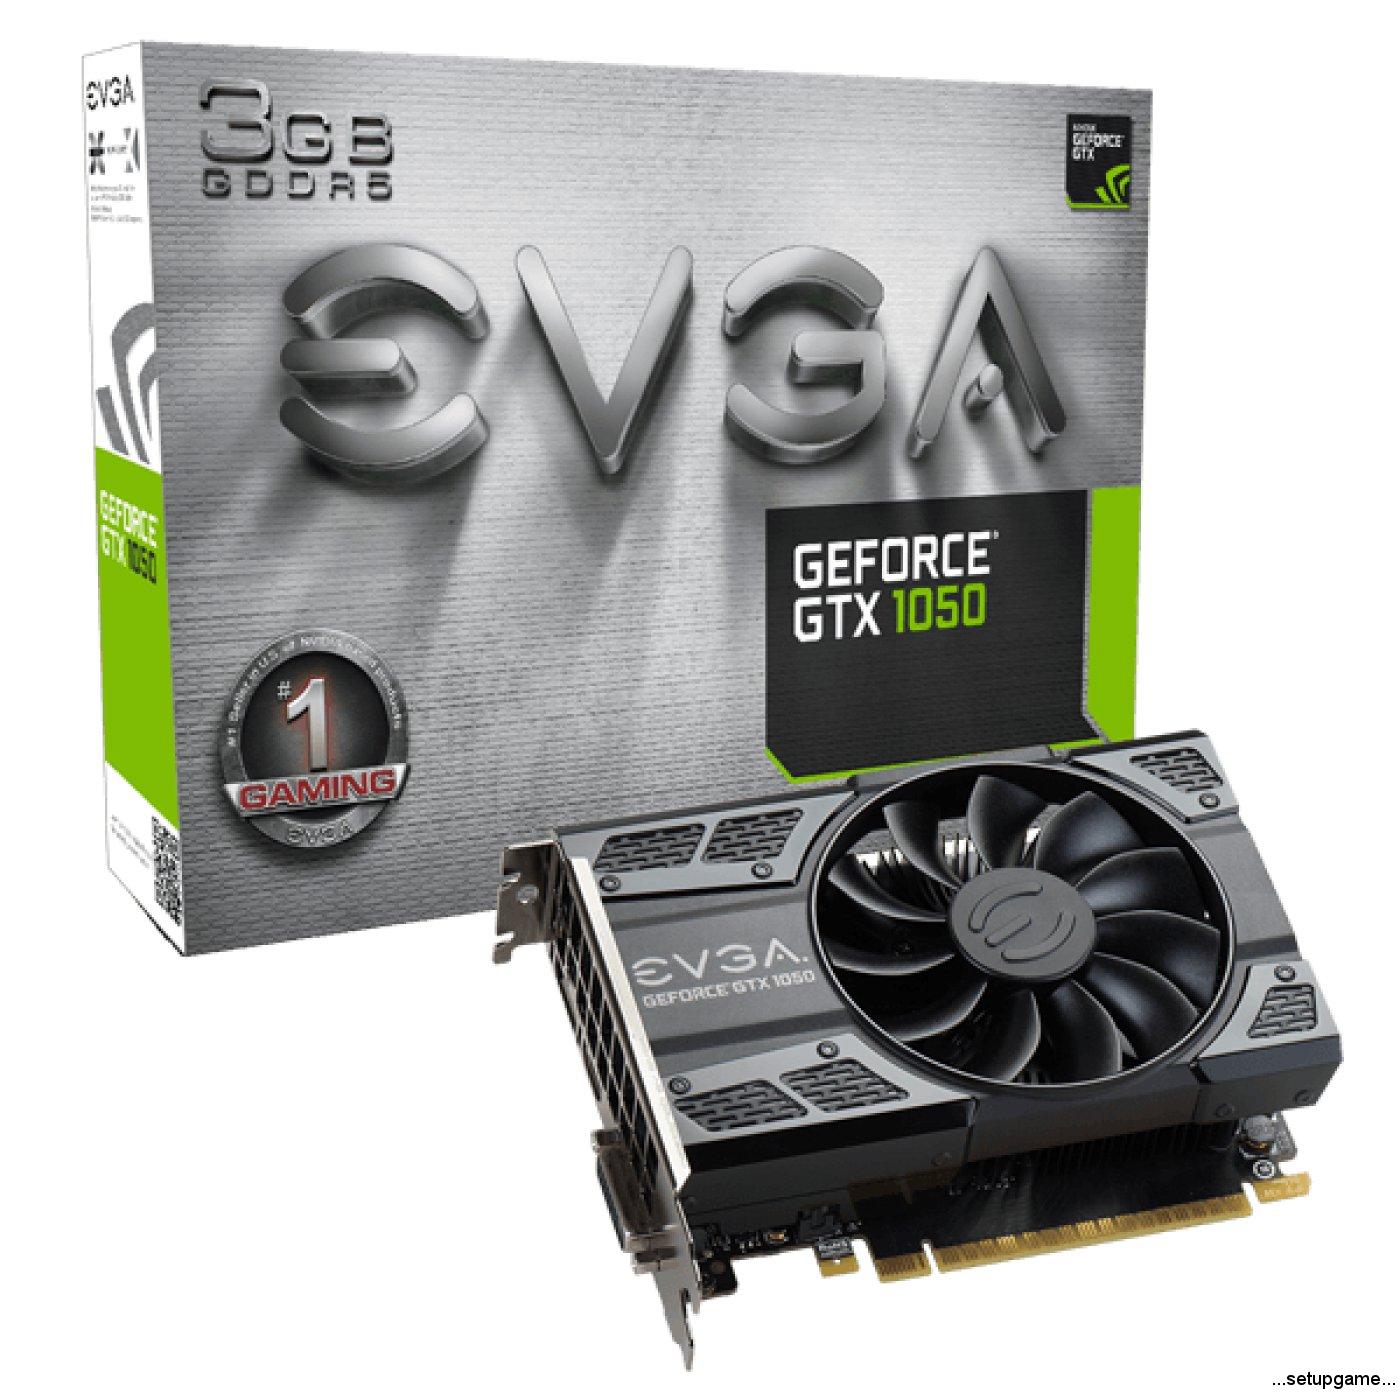 EVGA با کارت گرافیک های خوش قیمت GeForce GTX 1050 3 GB آمده است